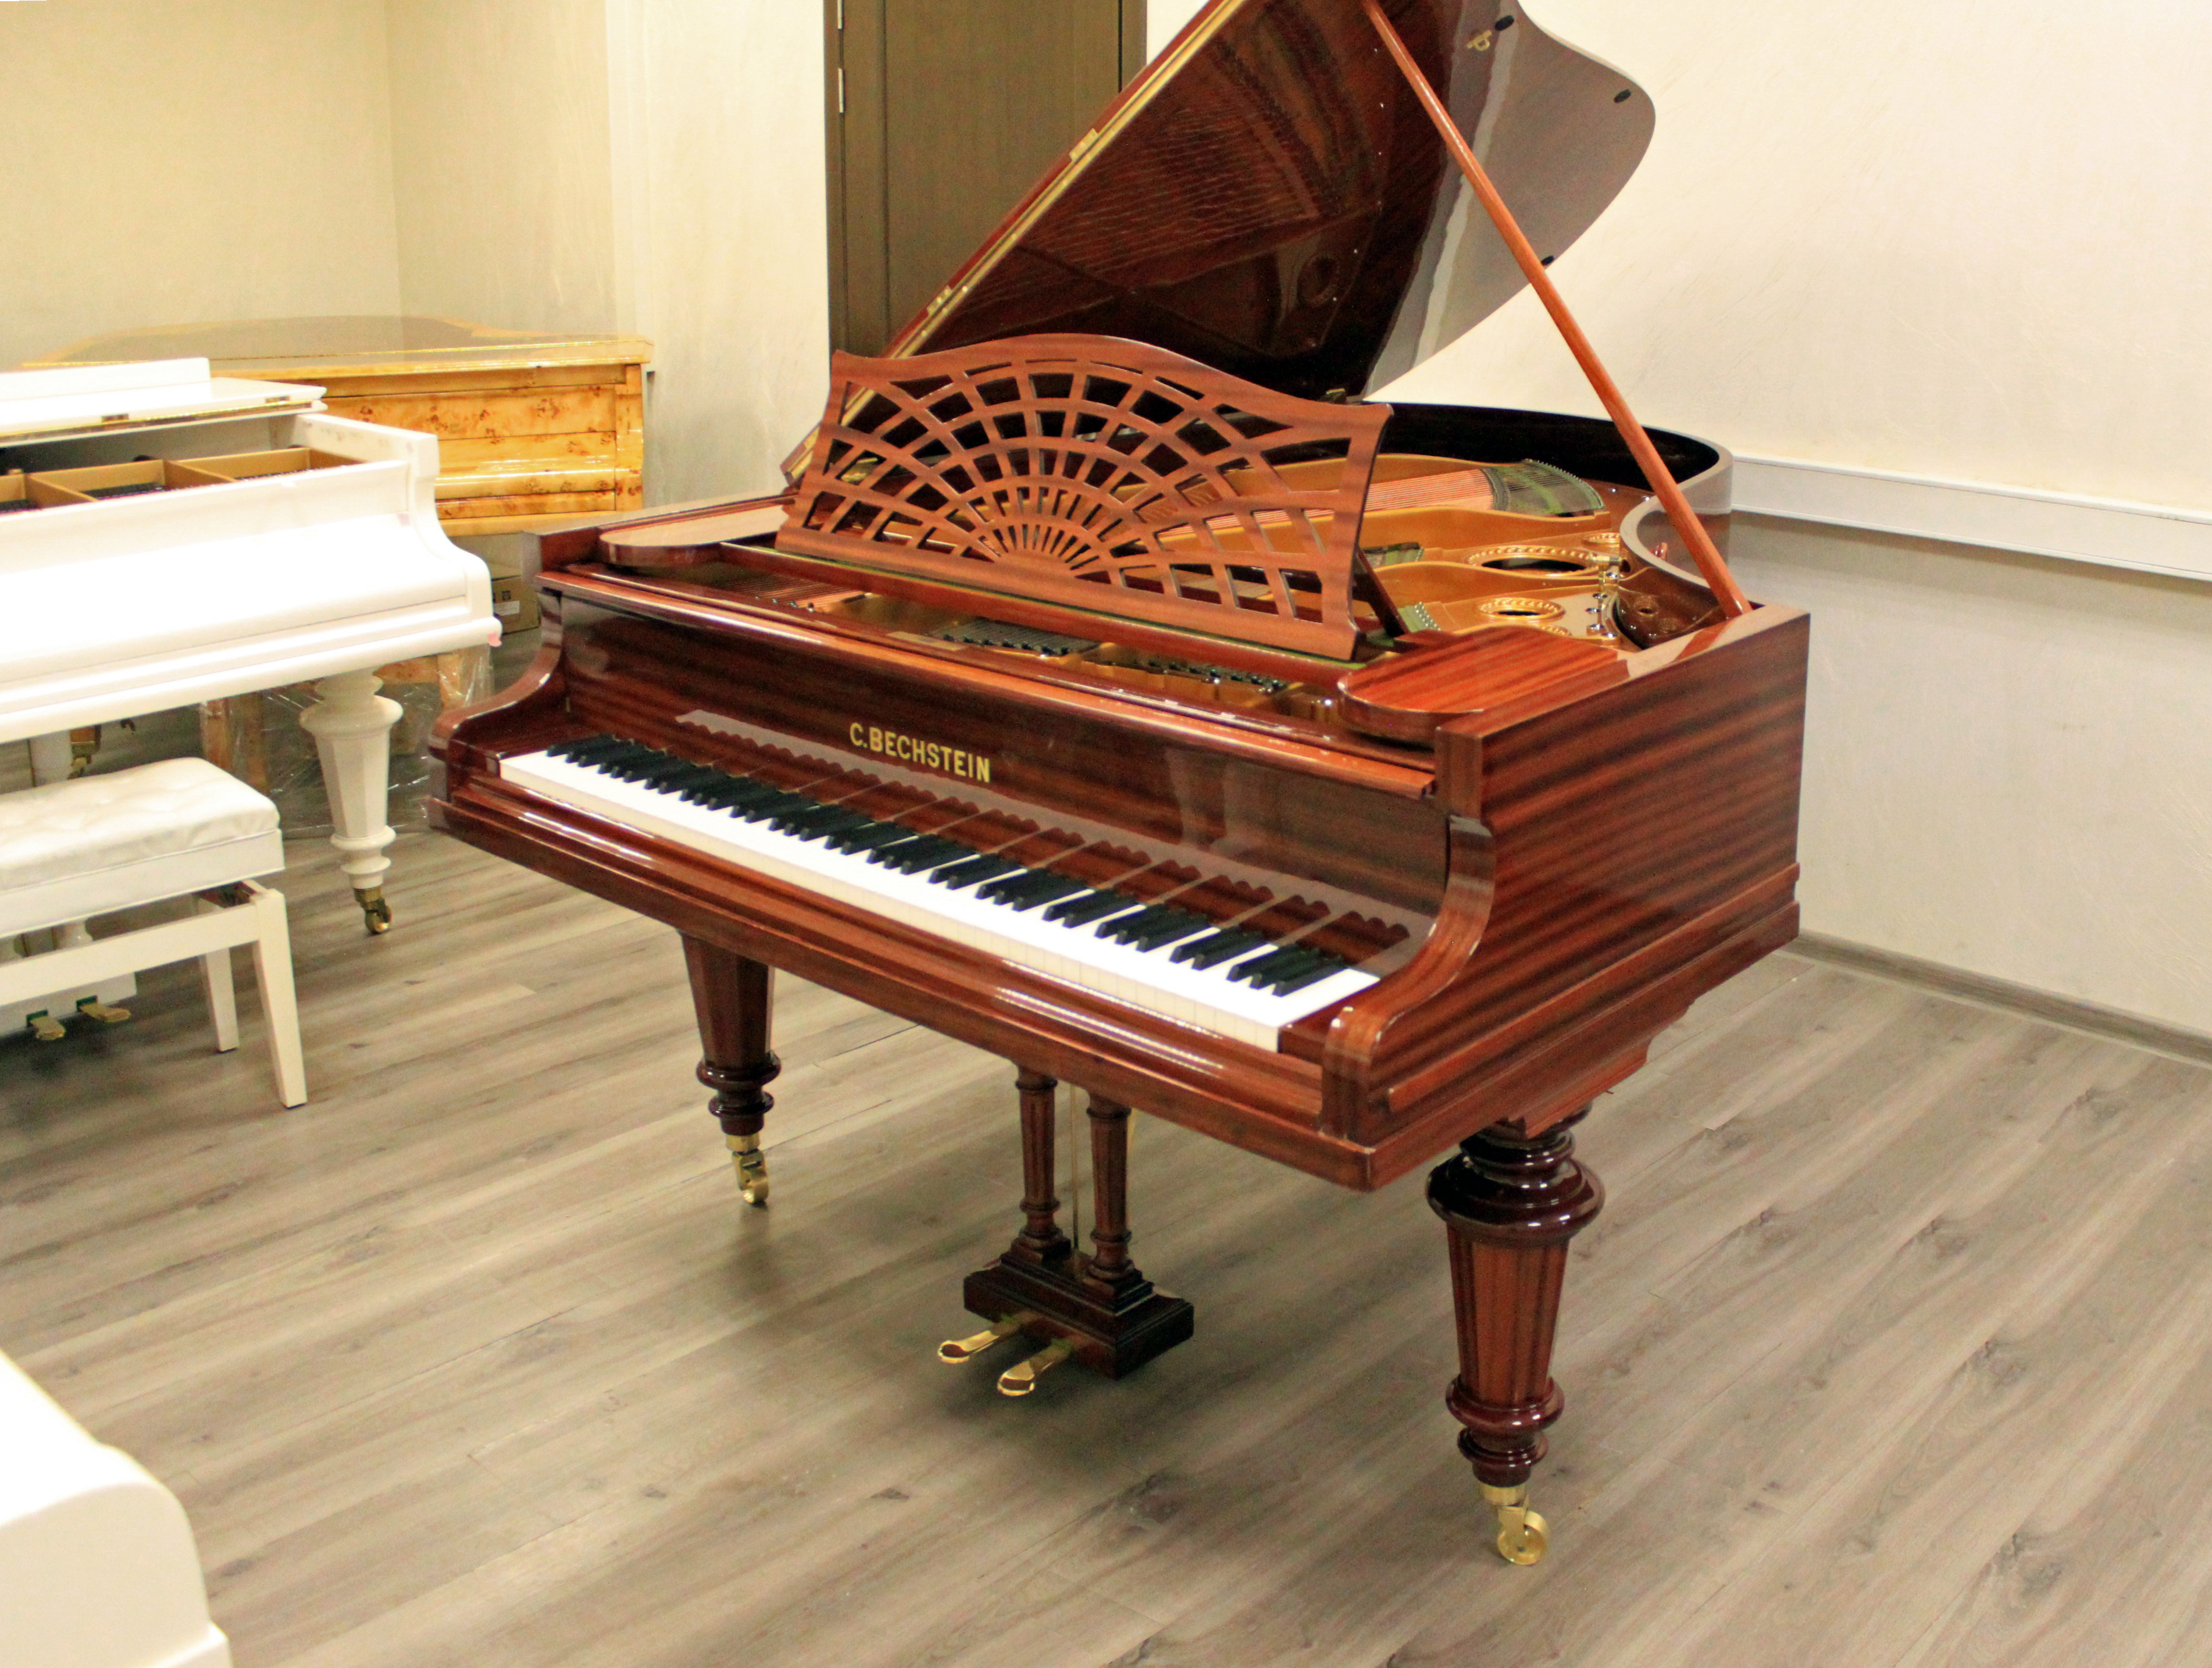 Салонный рояль C. Bechstein дизайна Классик